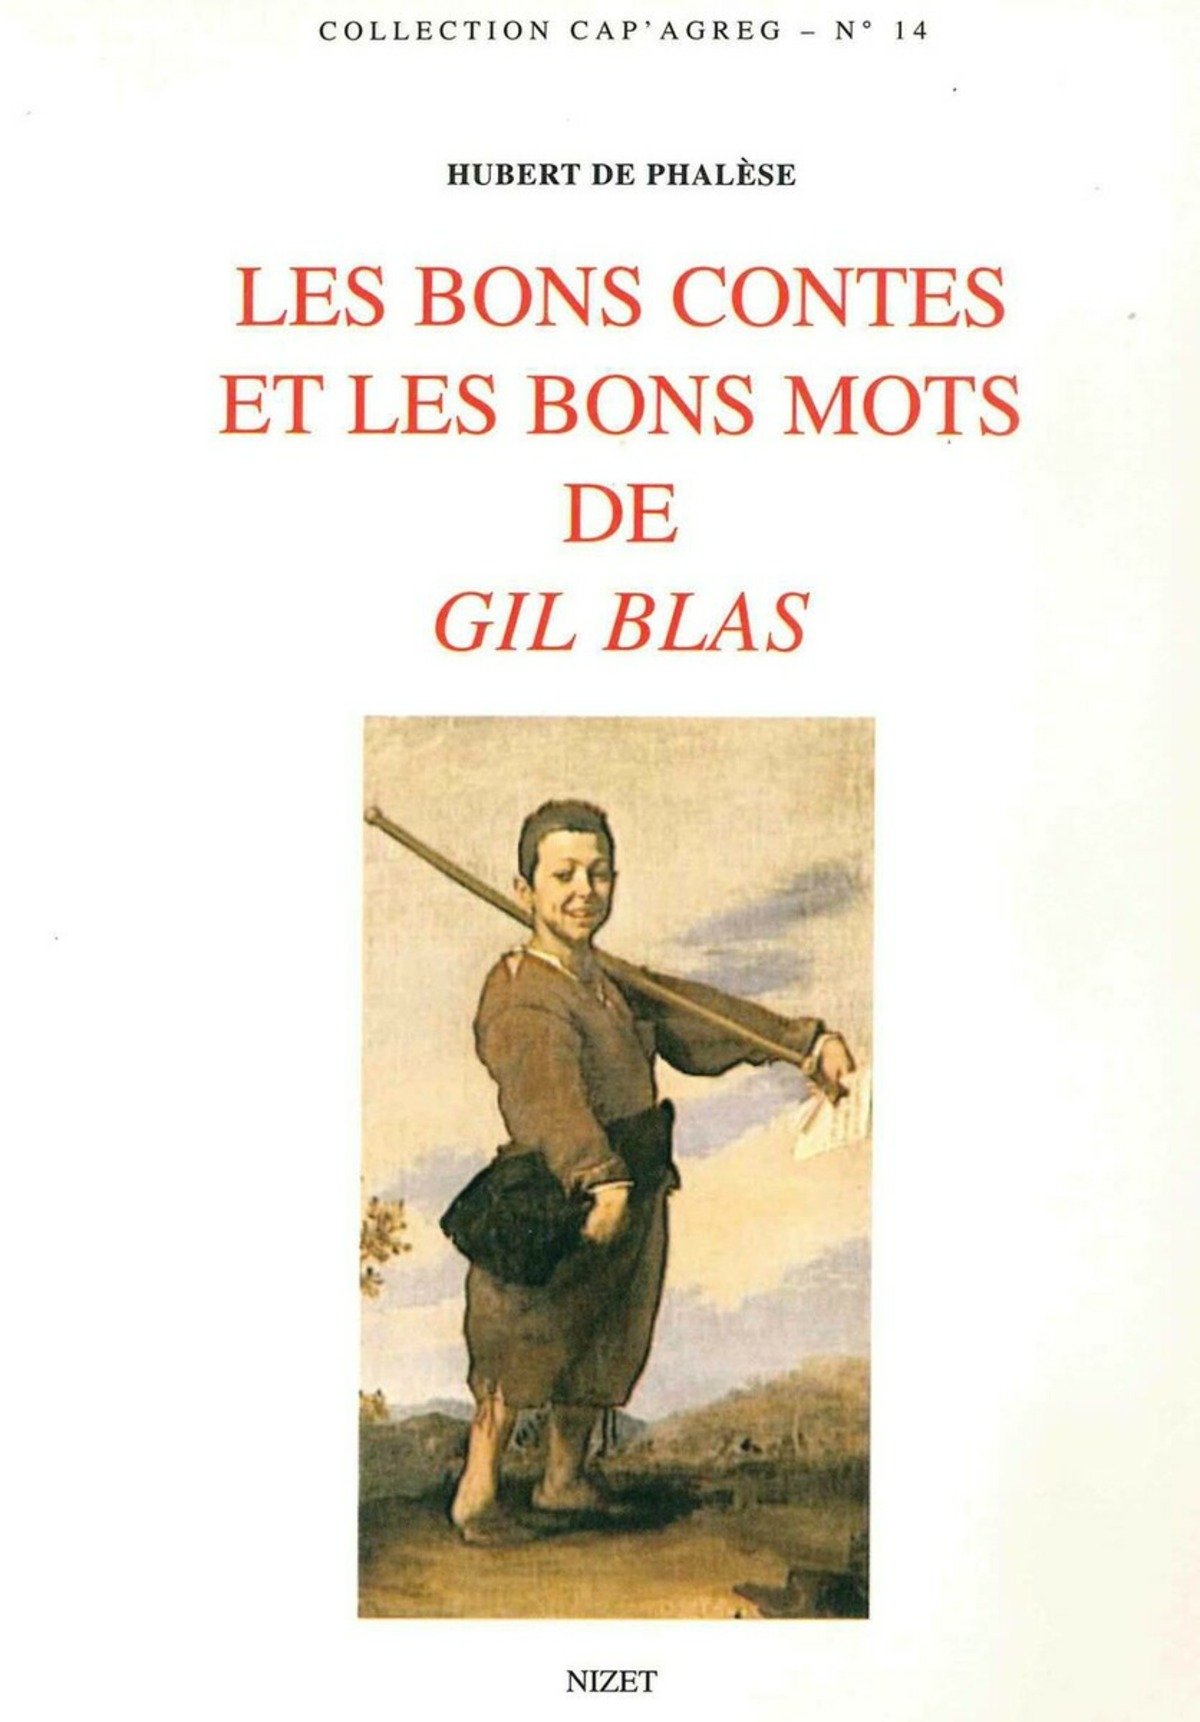 Les Bons contes et les bons mots de Gil Blas